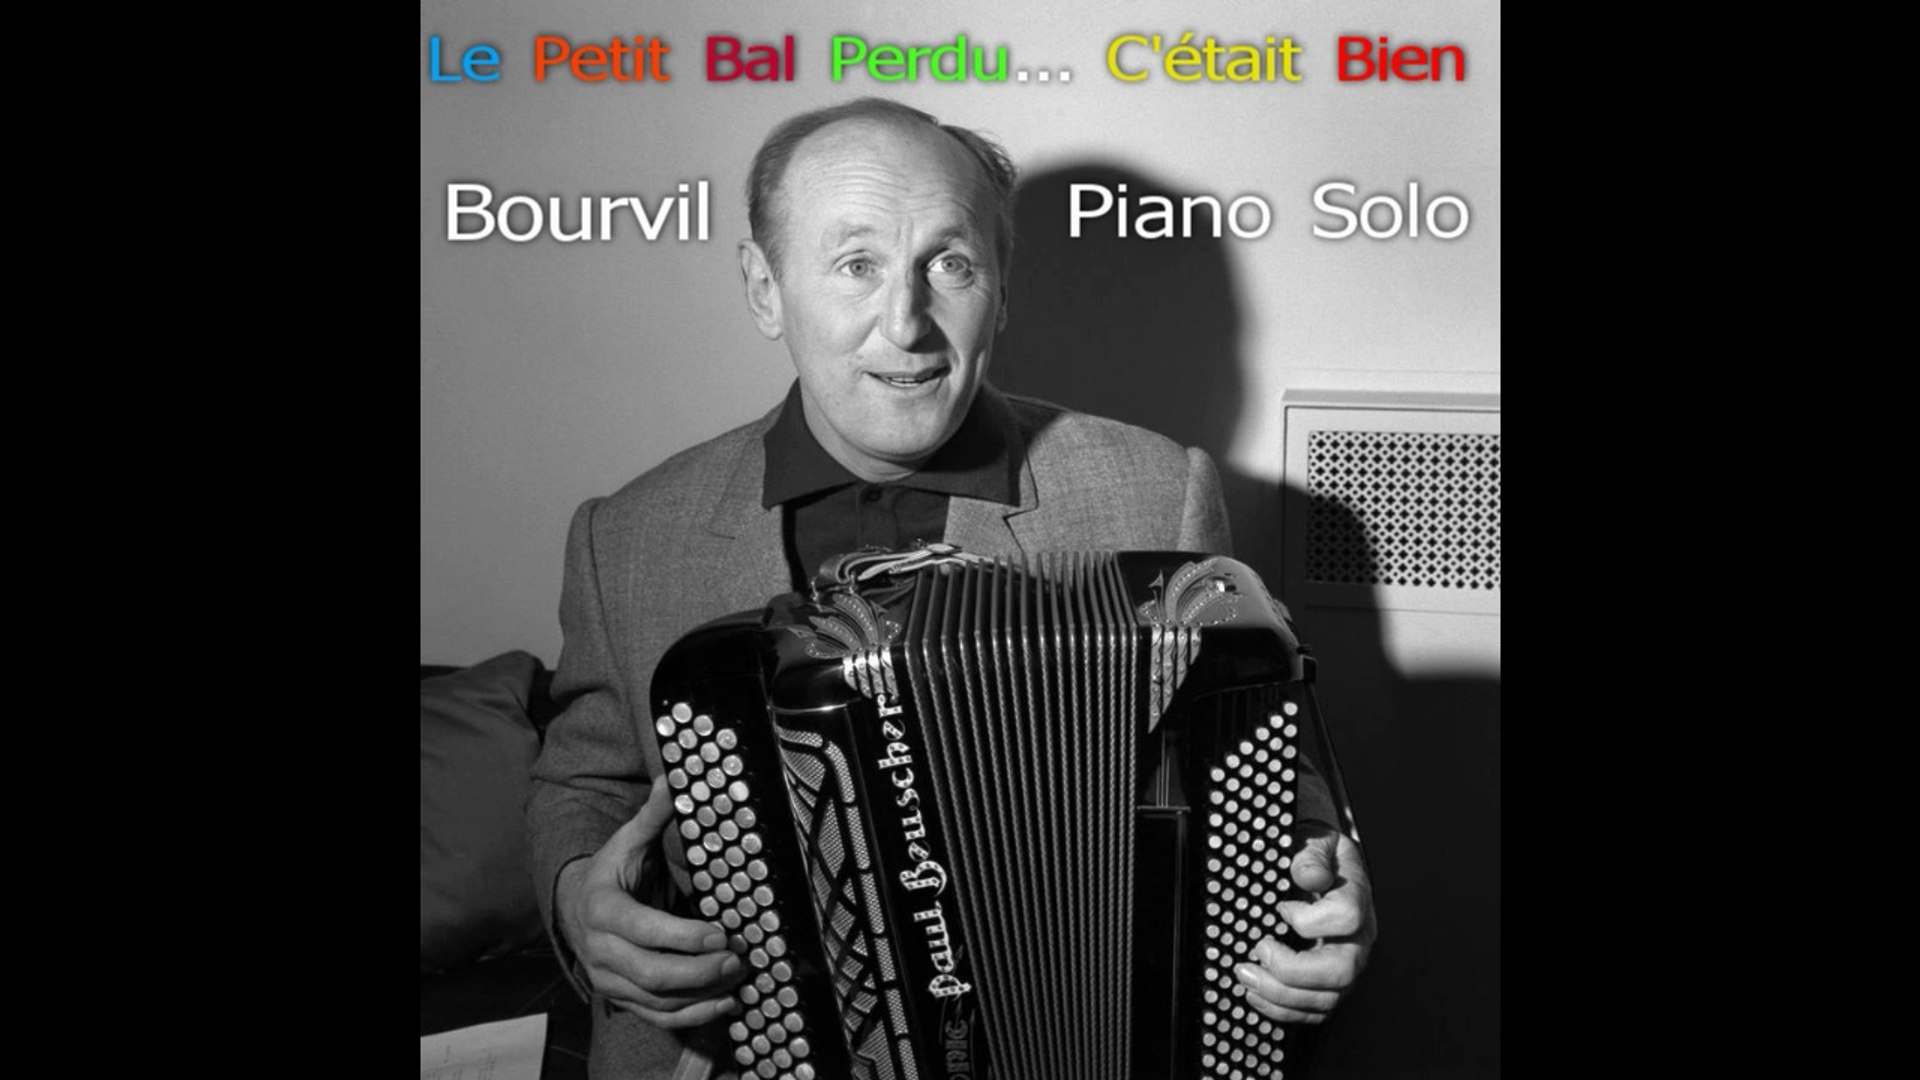 Bourvil - C'était Bien...Le Petit Bal Perdu - Piano Solo (Adaptation Pascal  Mencarelli) - Vidéo Dailymotion